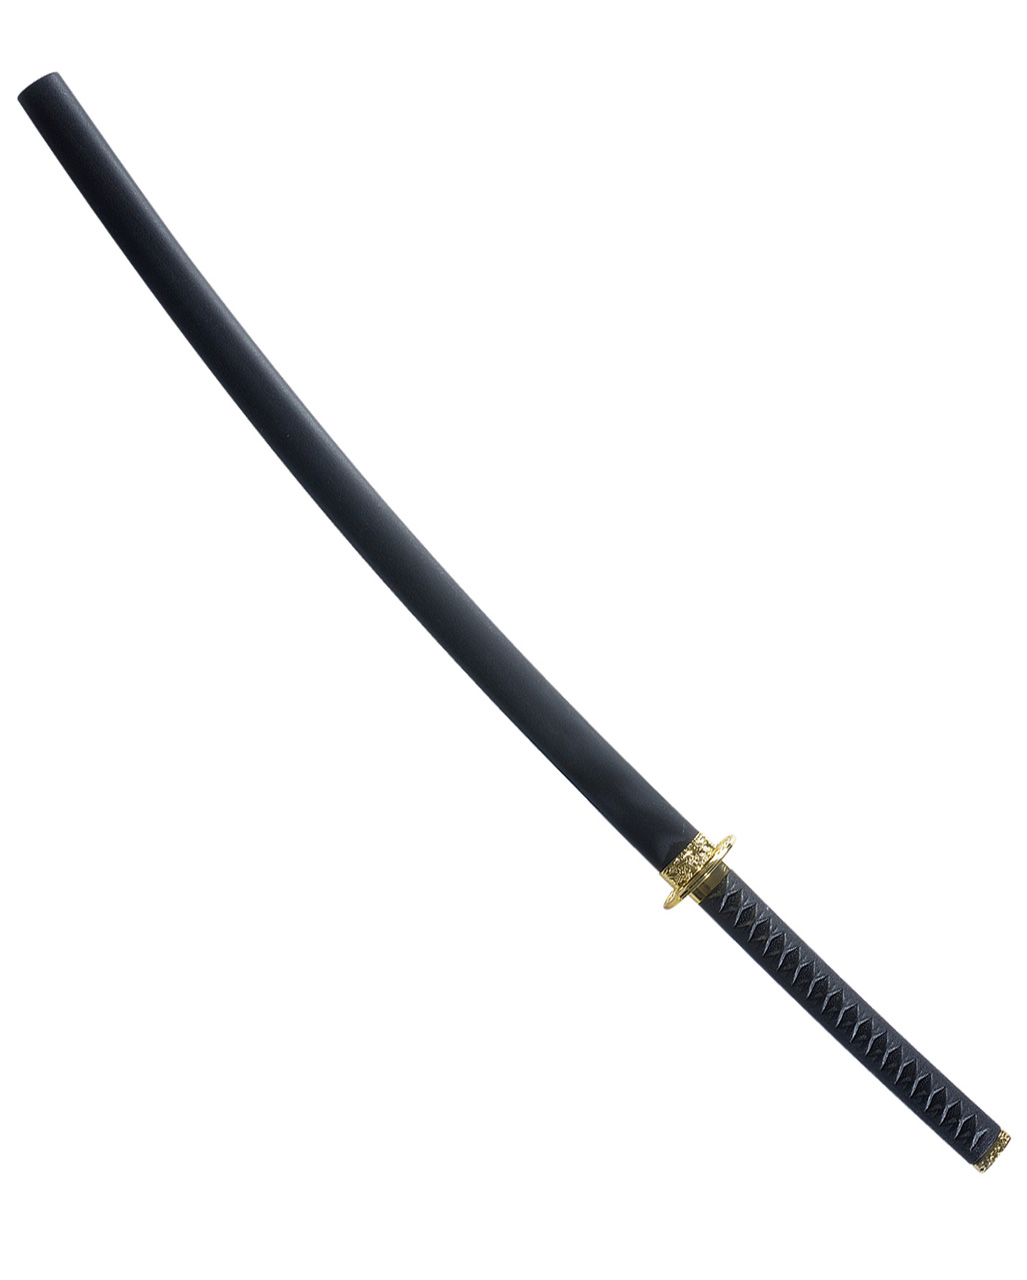 Großes Katana Samurai Schwert Ninjaschwert Samuraischwert Kostüm Zubehör Ninja 